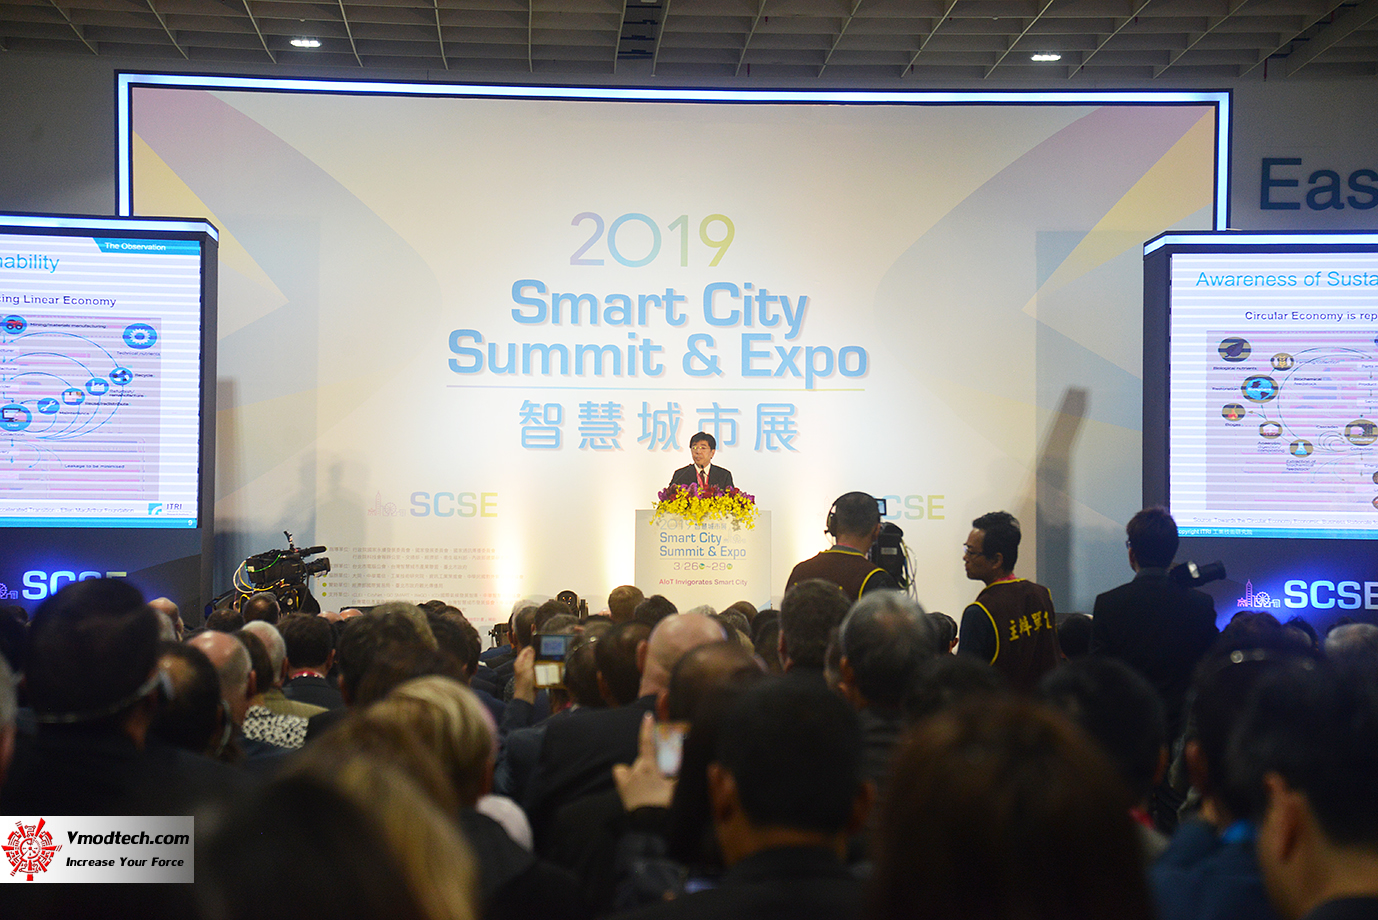 dsc 8249 เยี่ยมชมพิธีเปิด 2019 SMART CITY SUMMIT & EXPO ณ กรุงไทเป ประเทศไต้หวัน 